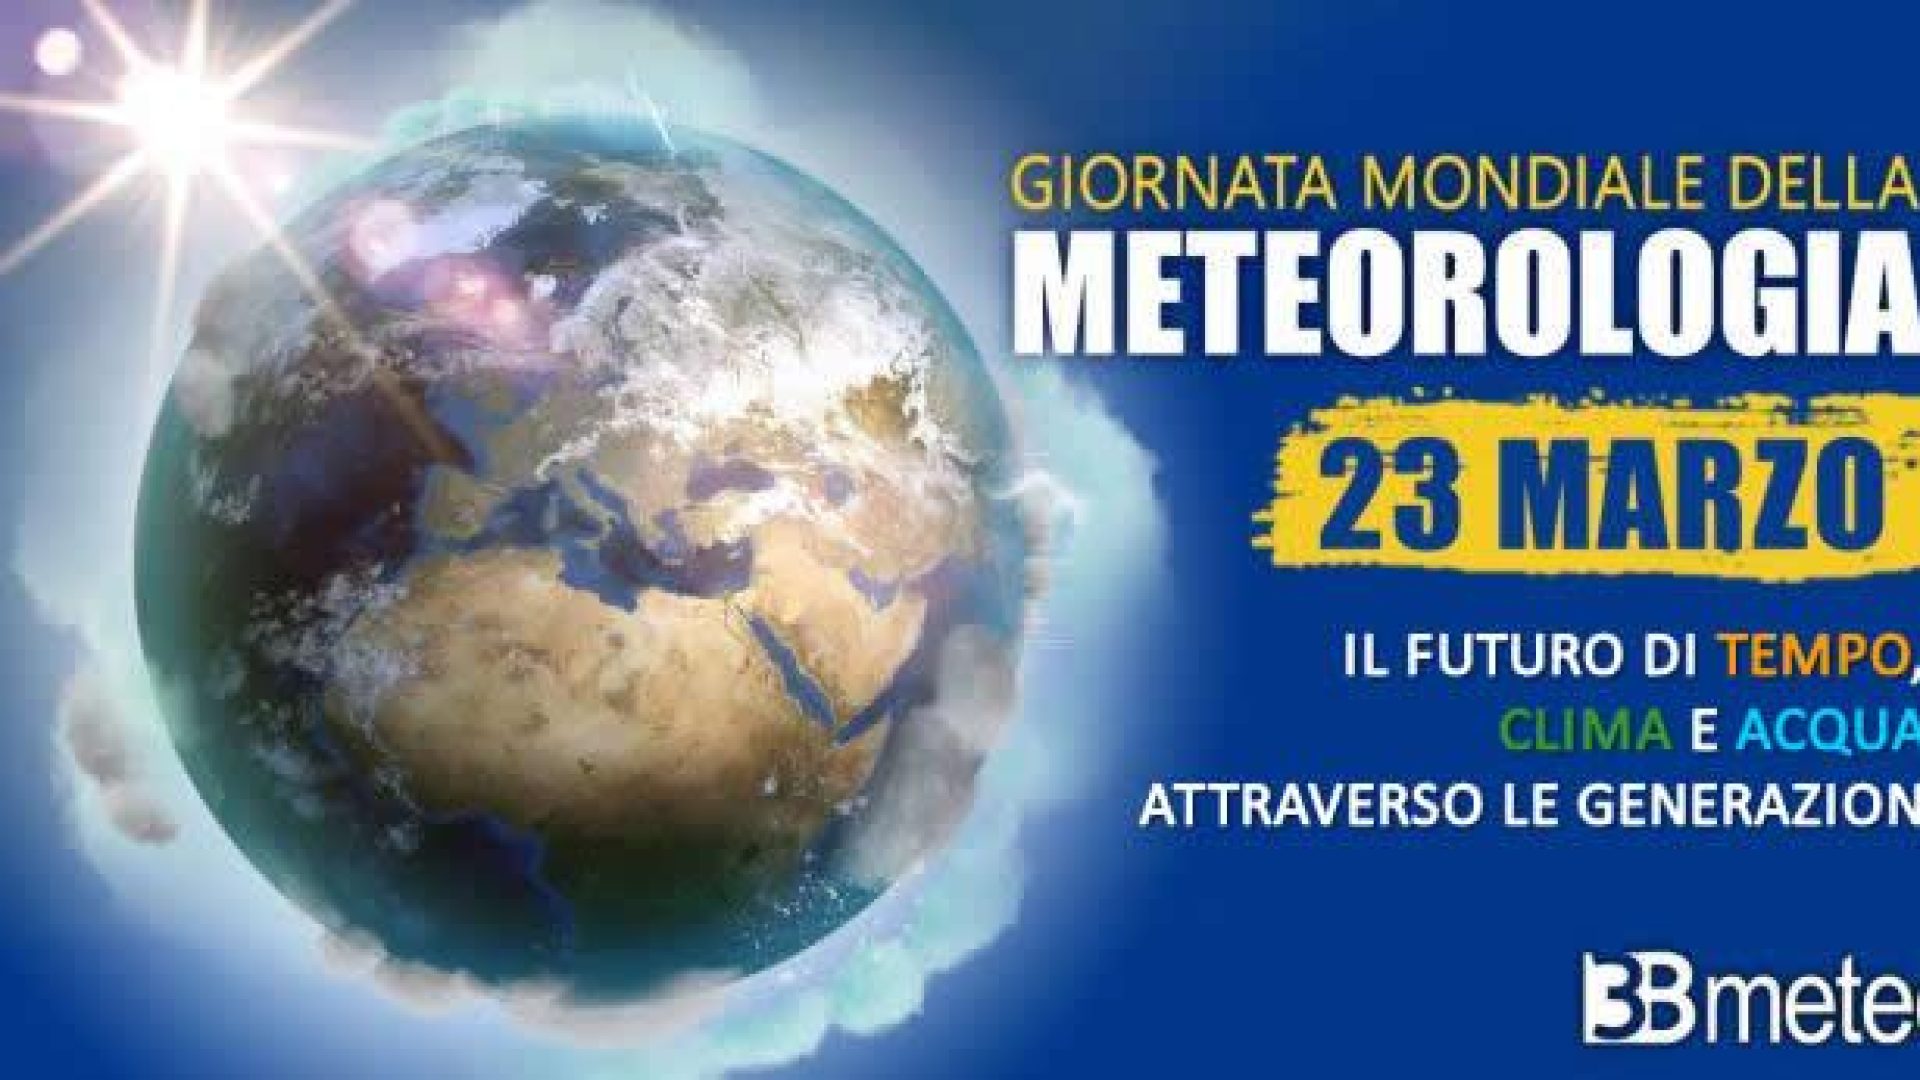 23-marzo-2023-giornata-mondiale-della-meteorologia-3bmeteo-143908